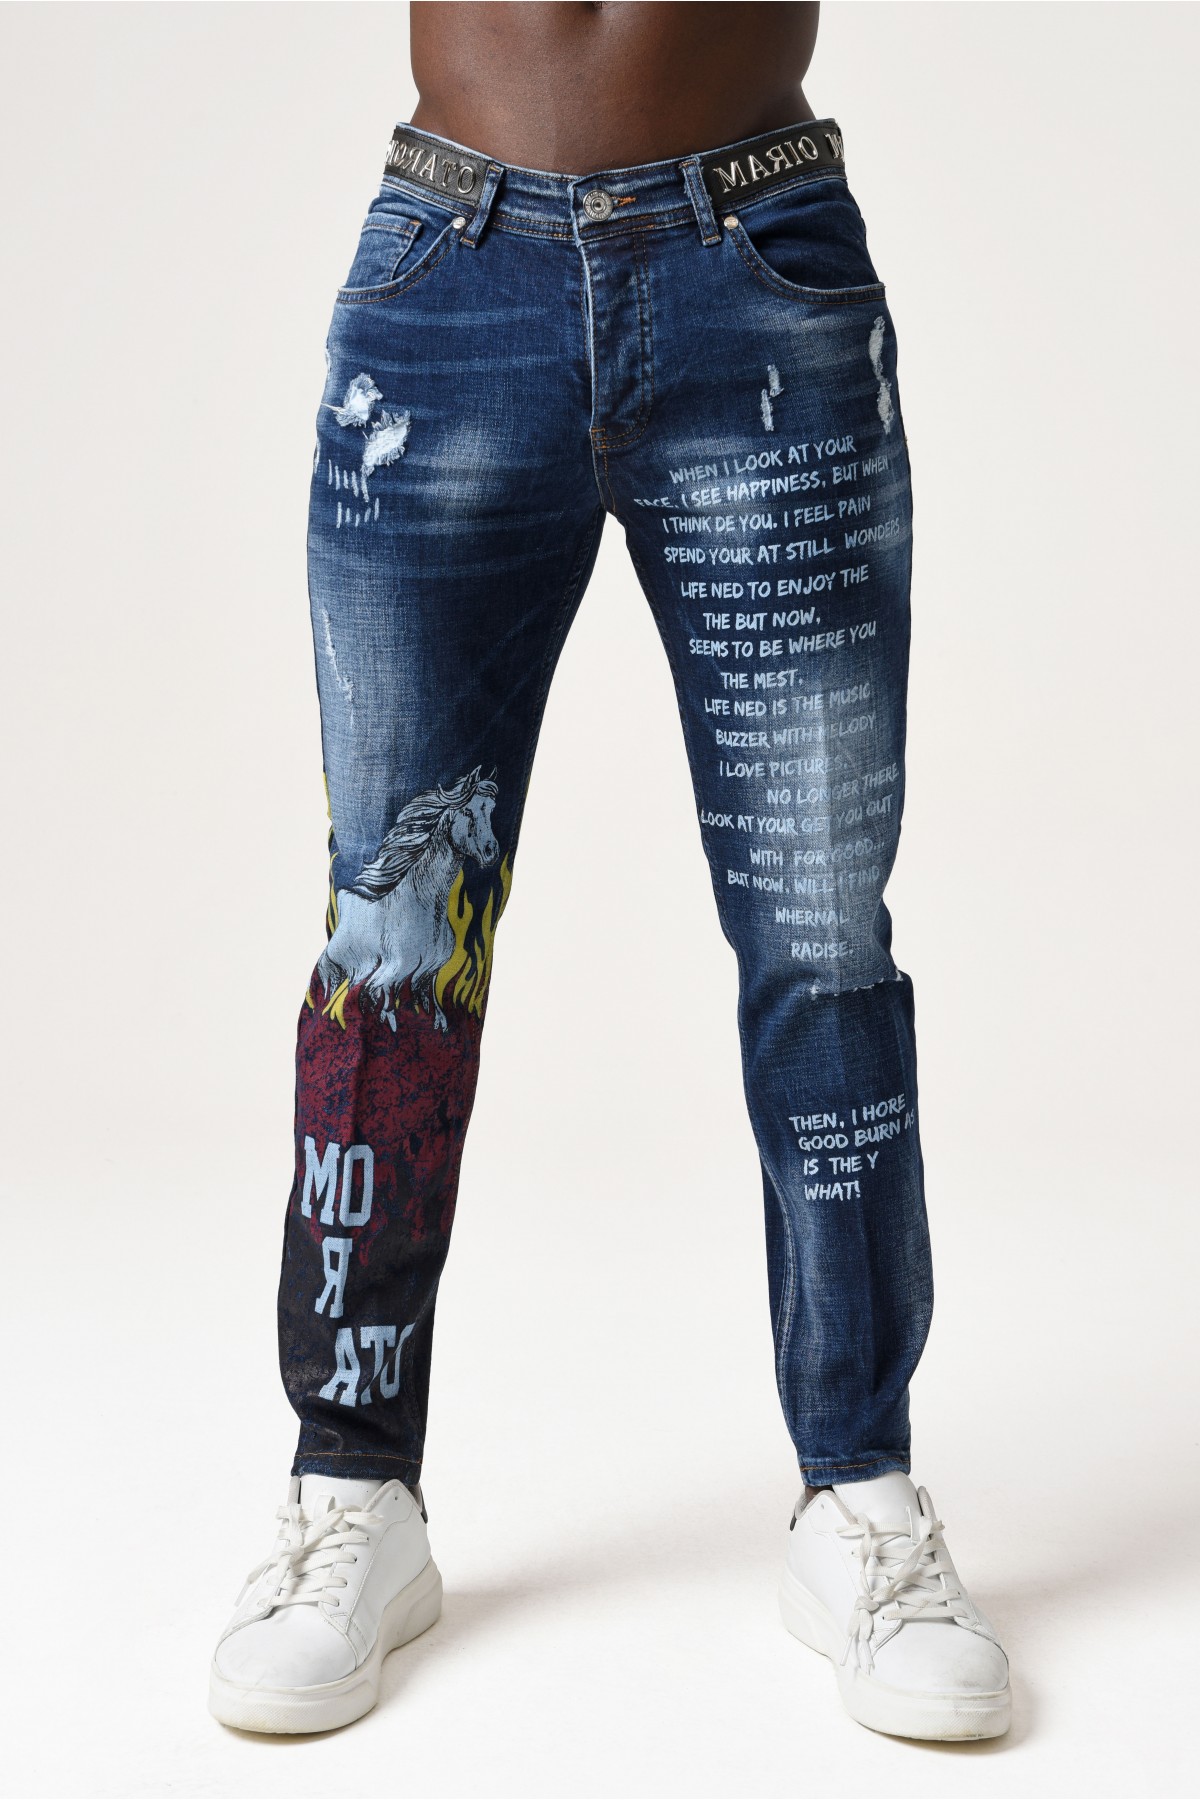 Erkek Denim Pantolon - At desenli Uzun yazılı - Mavi